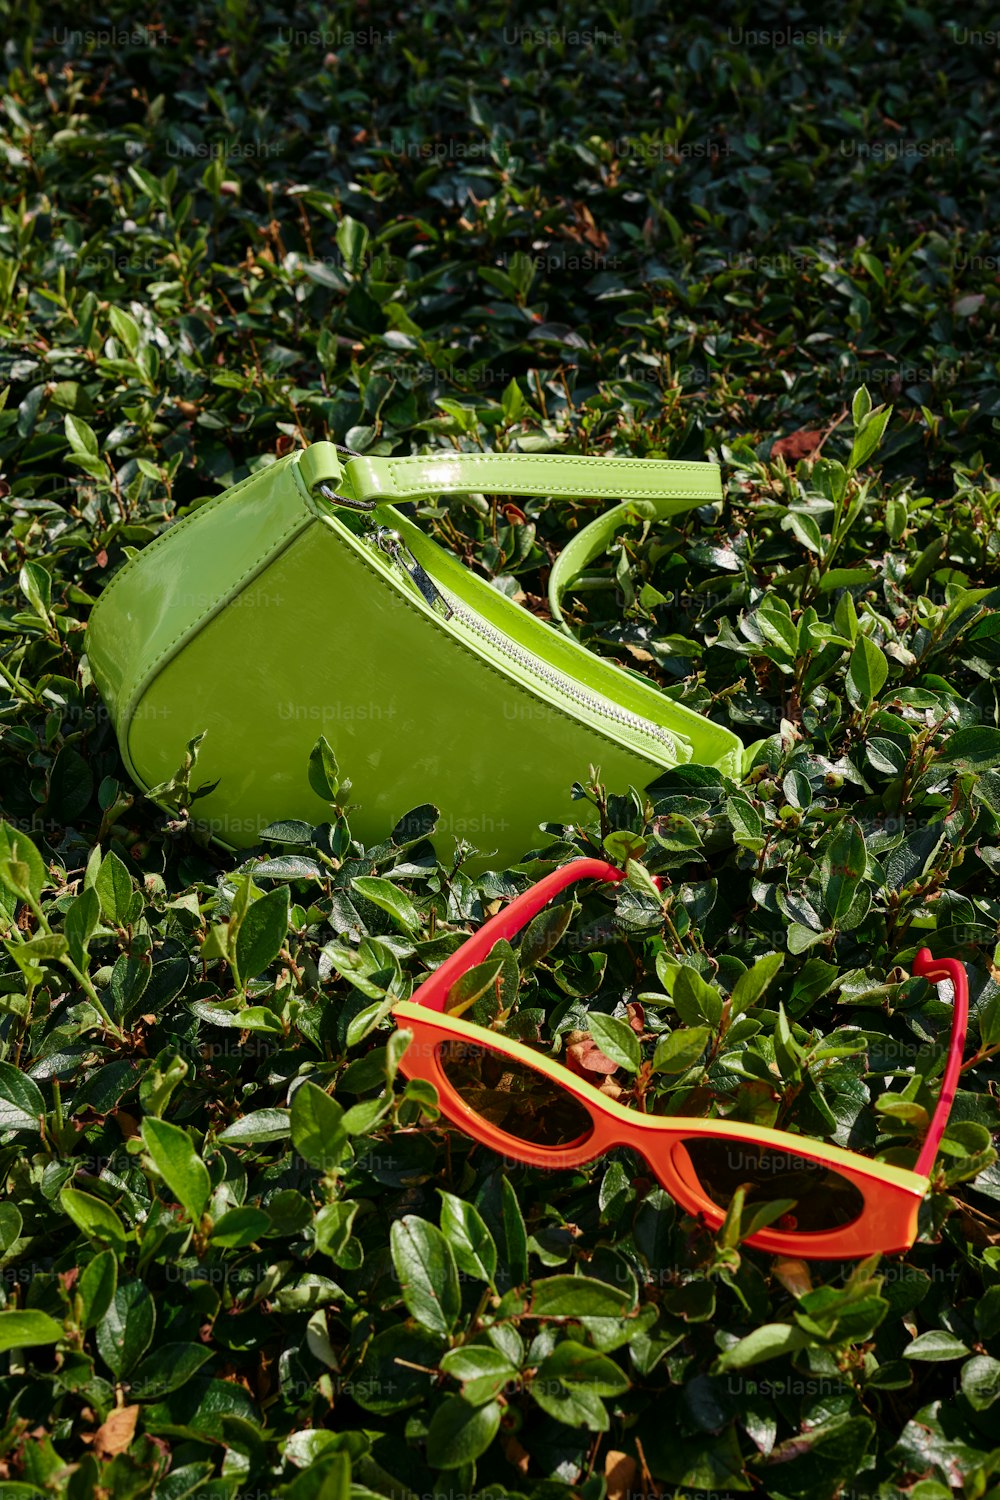 un paio di occhiali da sole e una custodia verde posata nell'erba